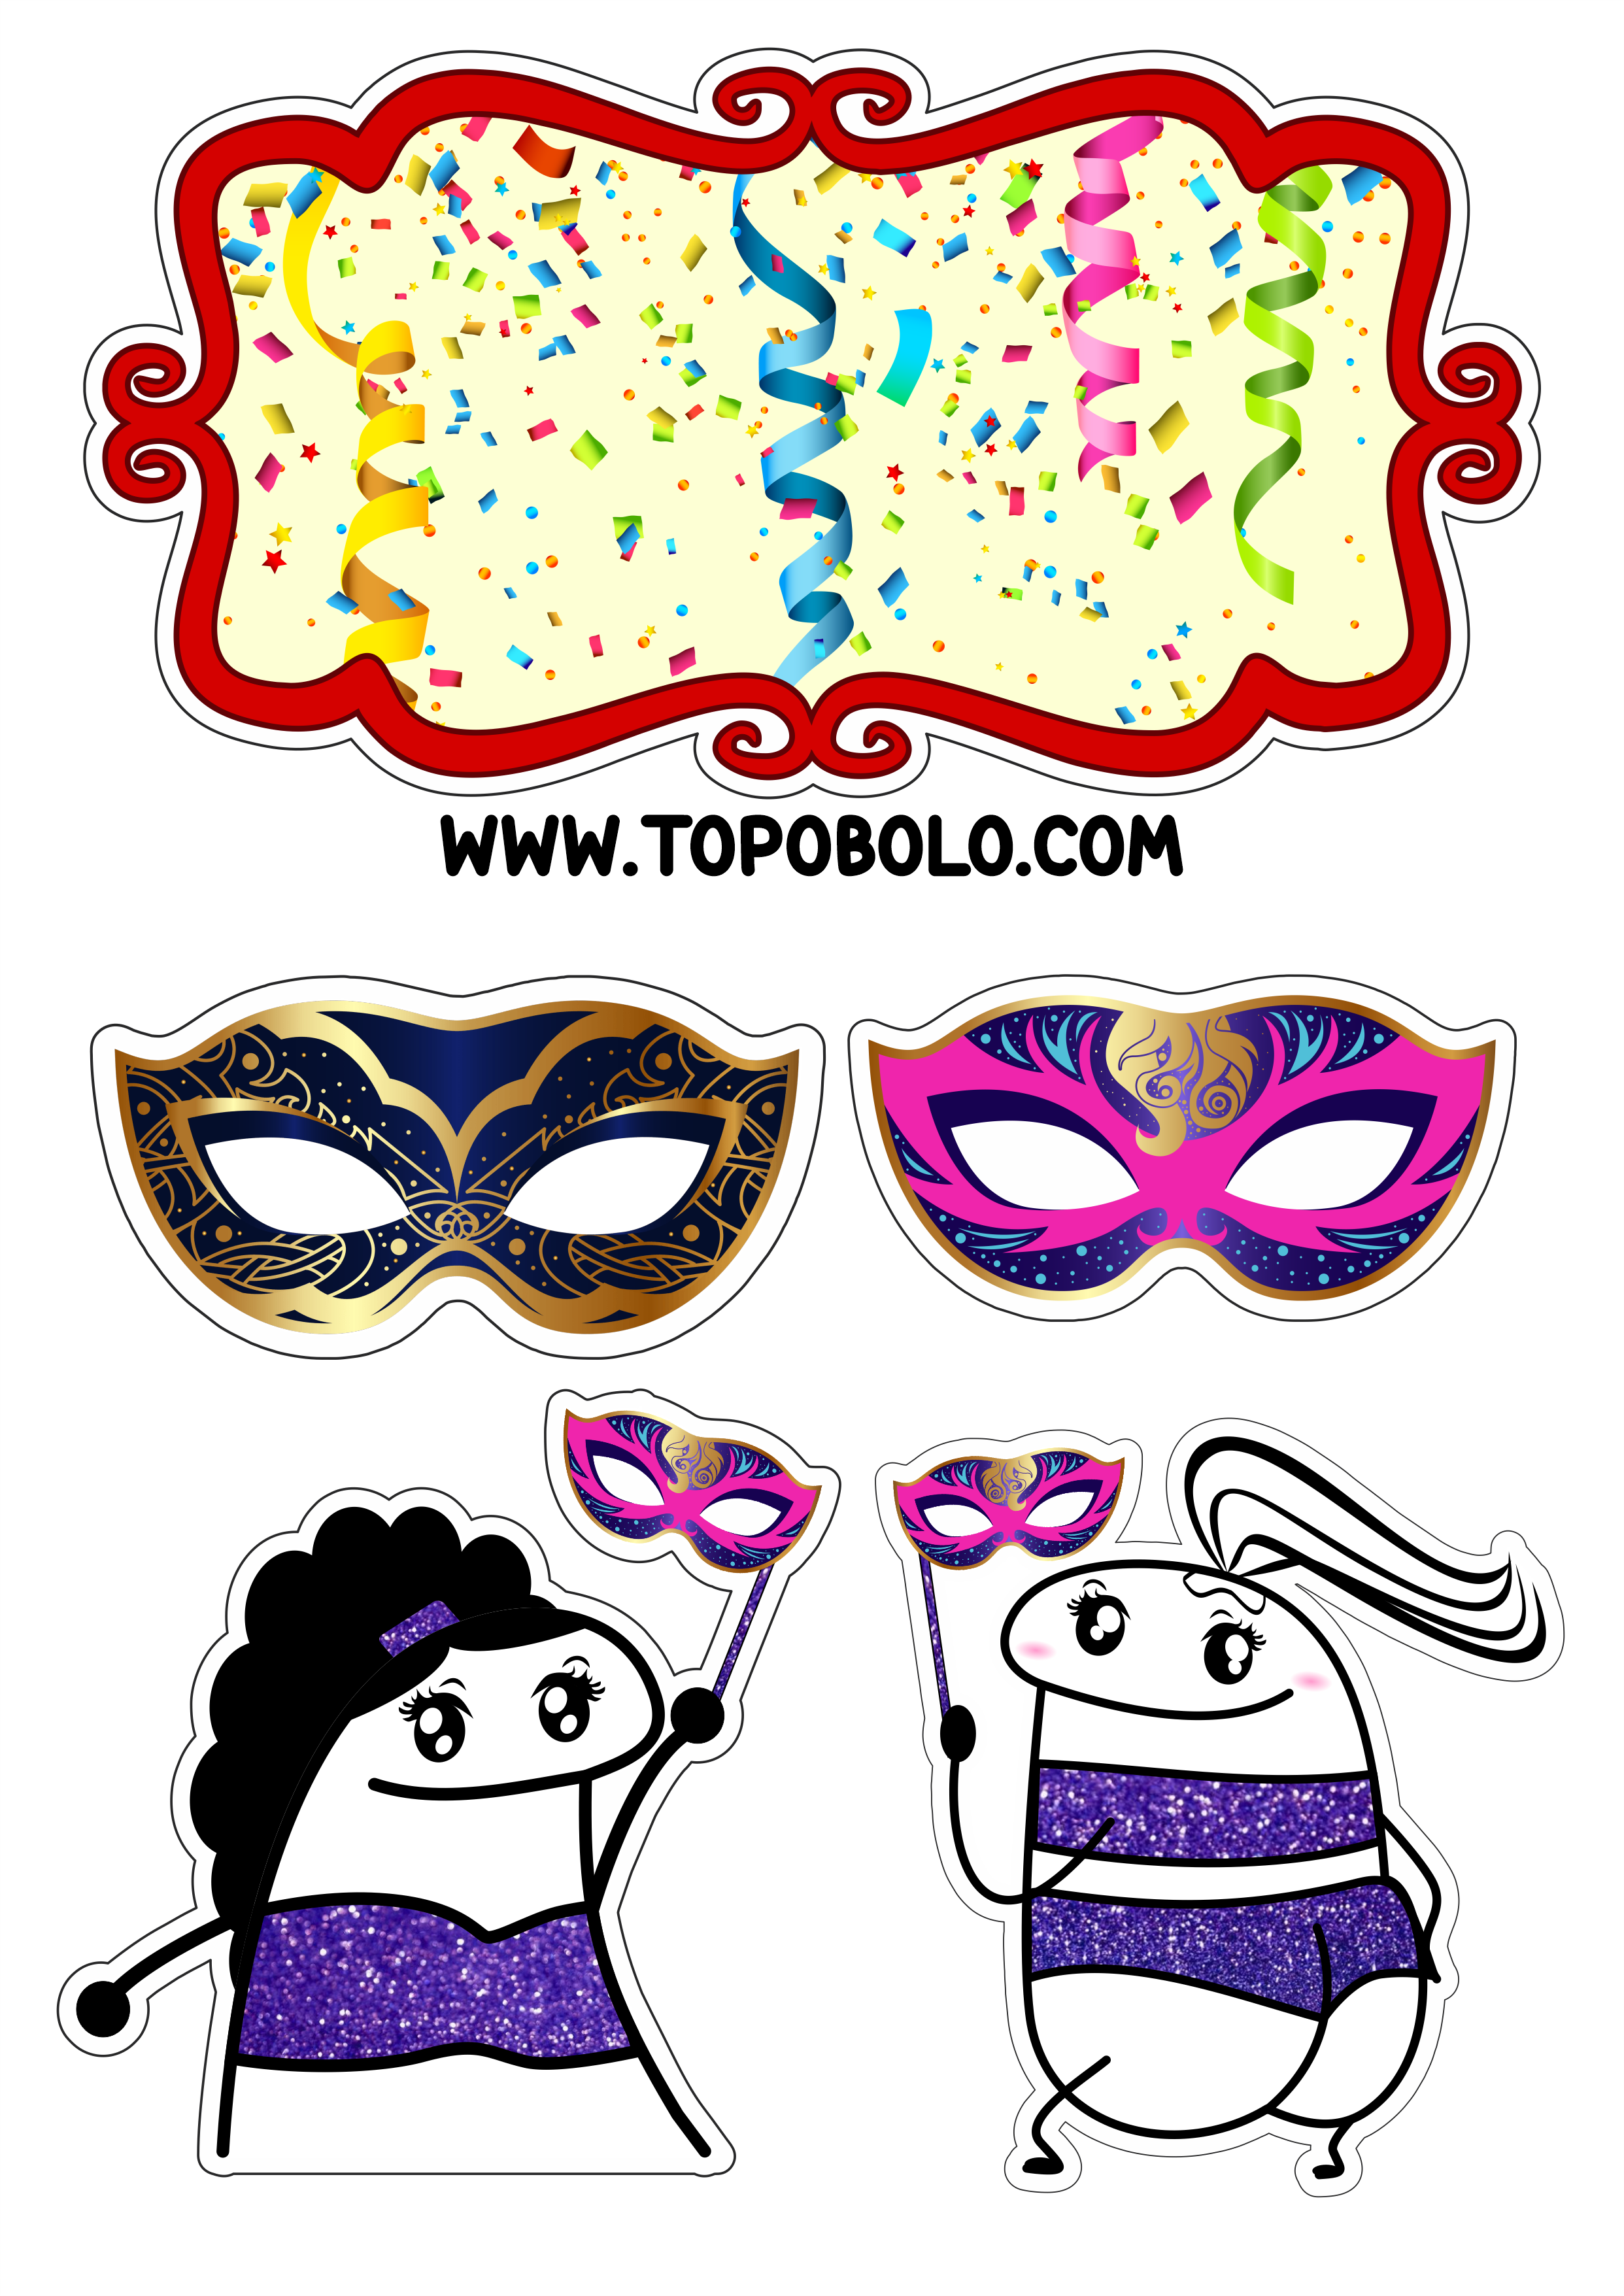 Carnaval topo de bolo flork of cows frases engraçadas baile de máscaras figurinhas png